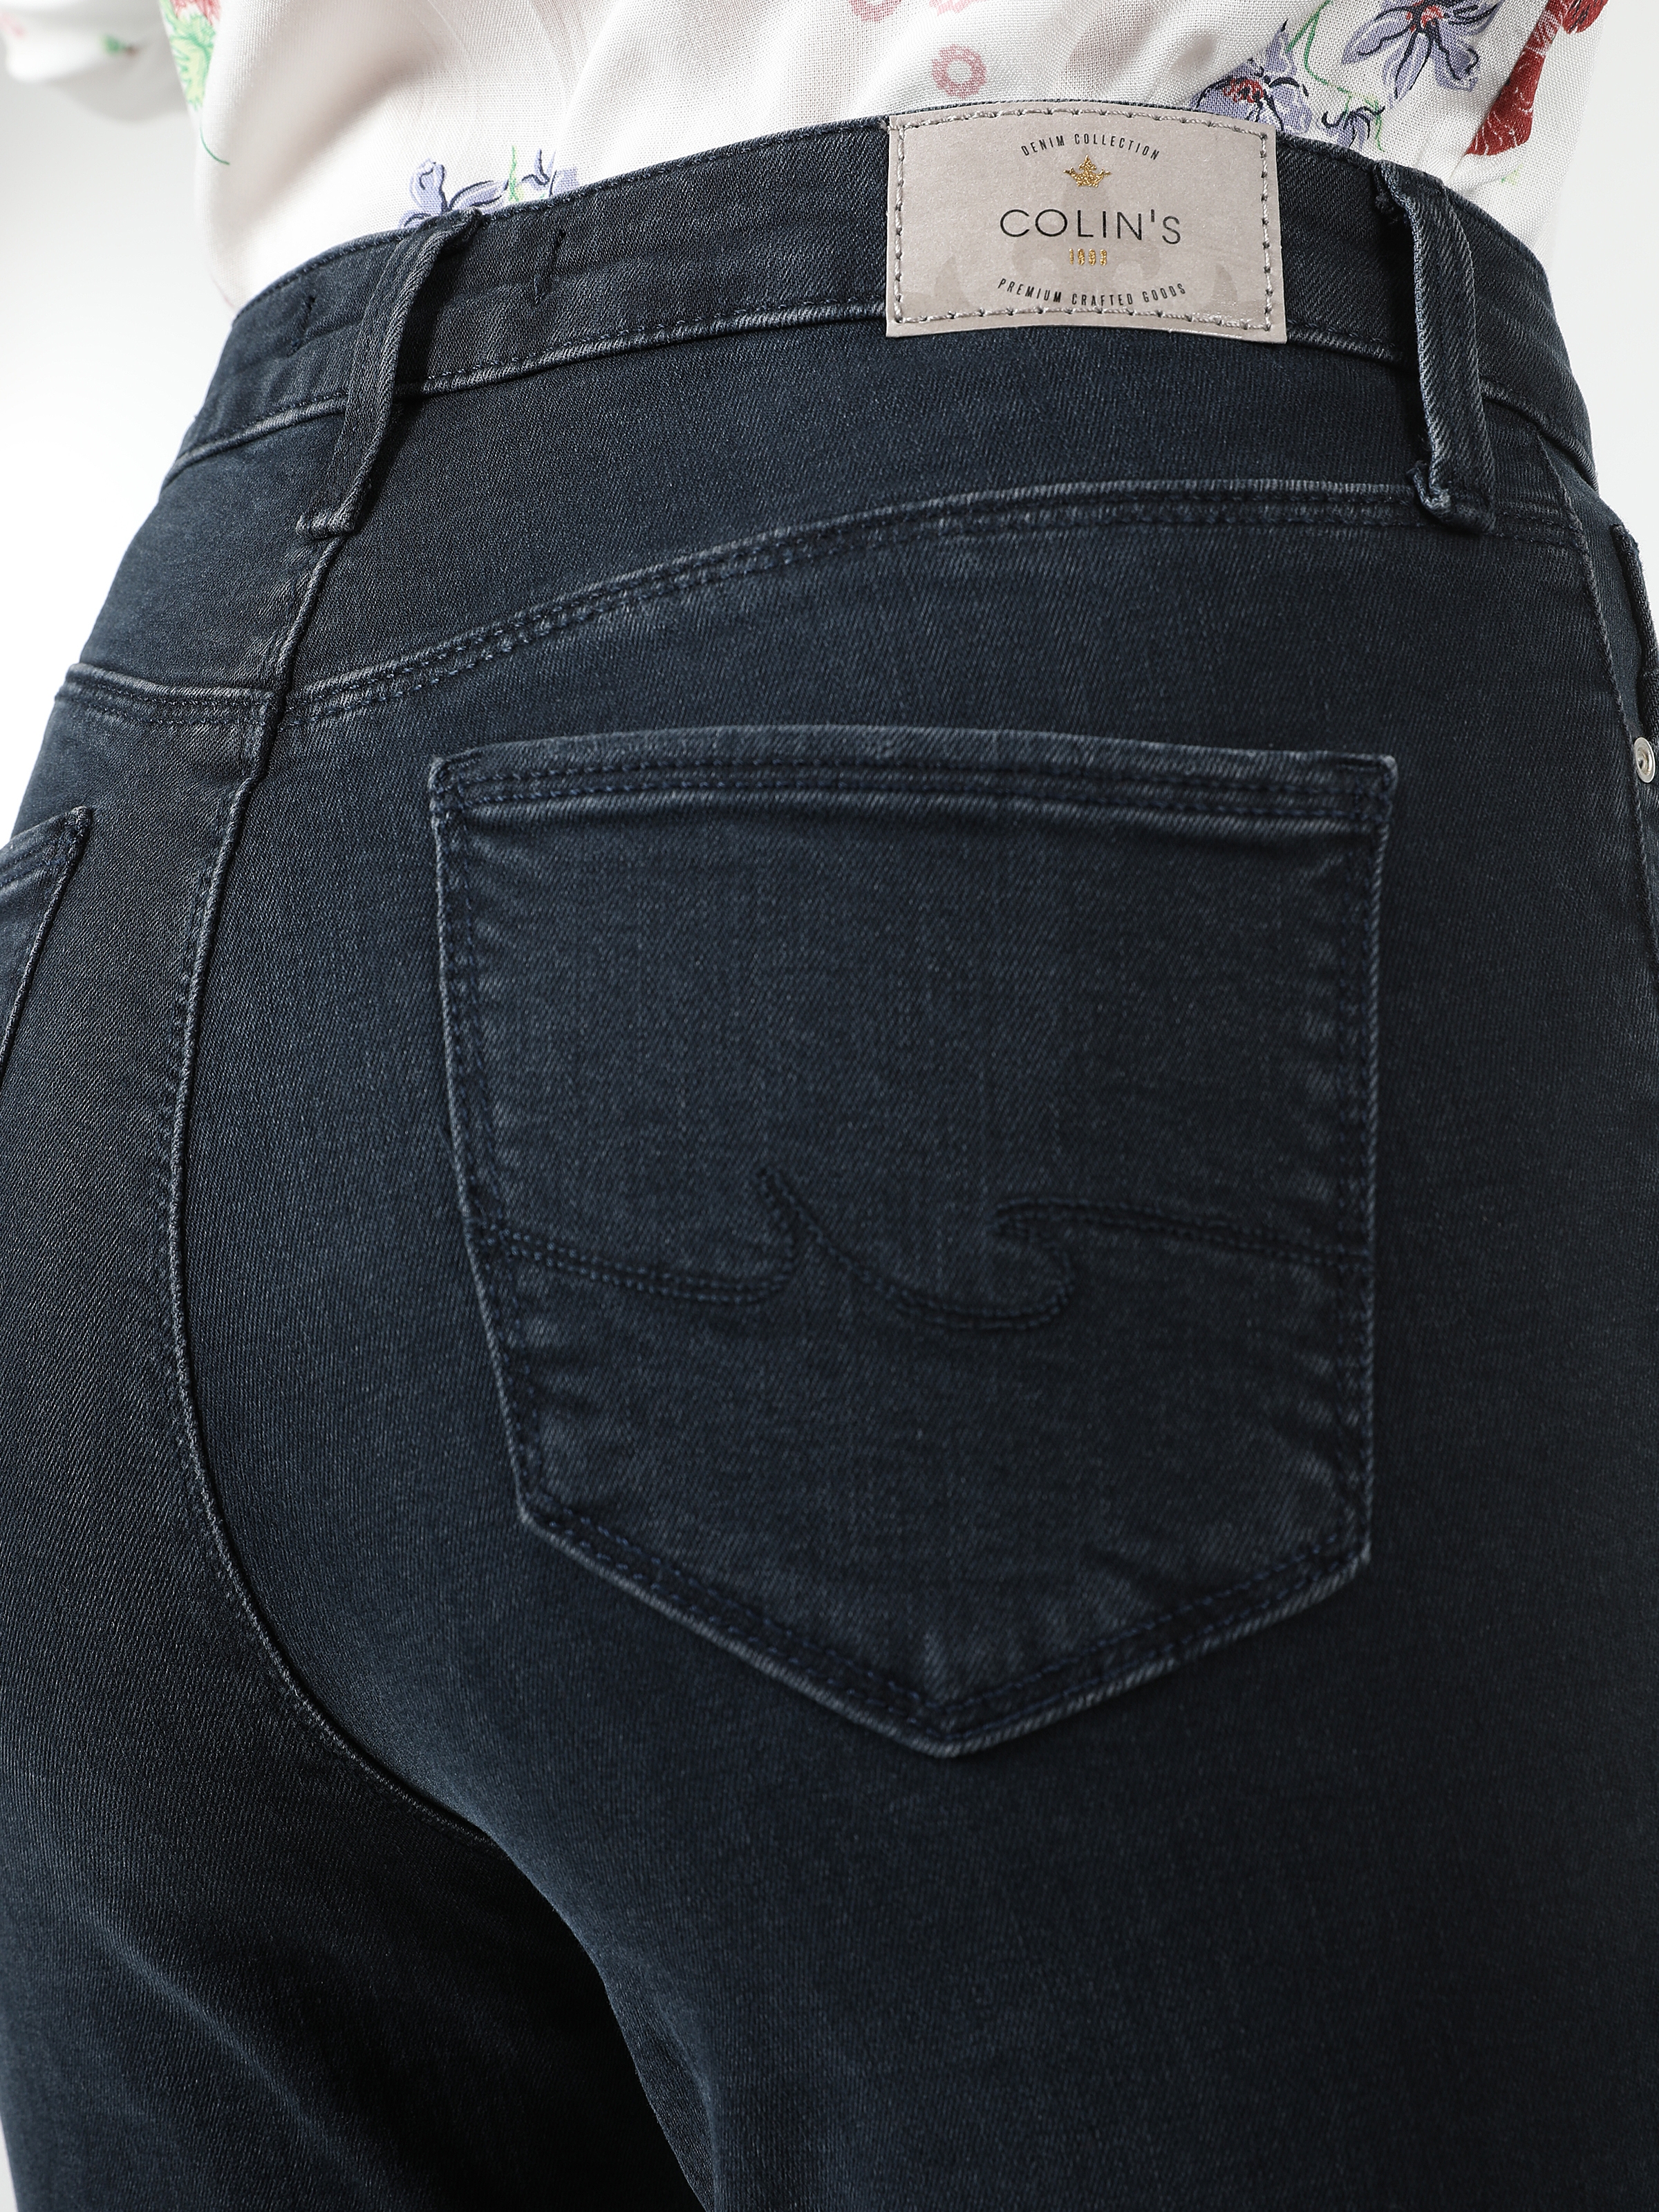 Afișați detalii pentru Pantaloni De Dama Albastru inchis Skinny Fit 760 DIANA 